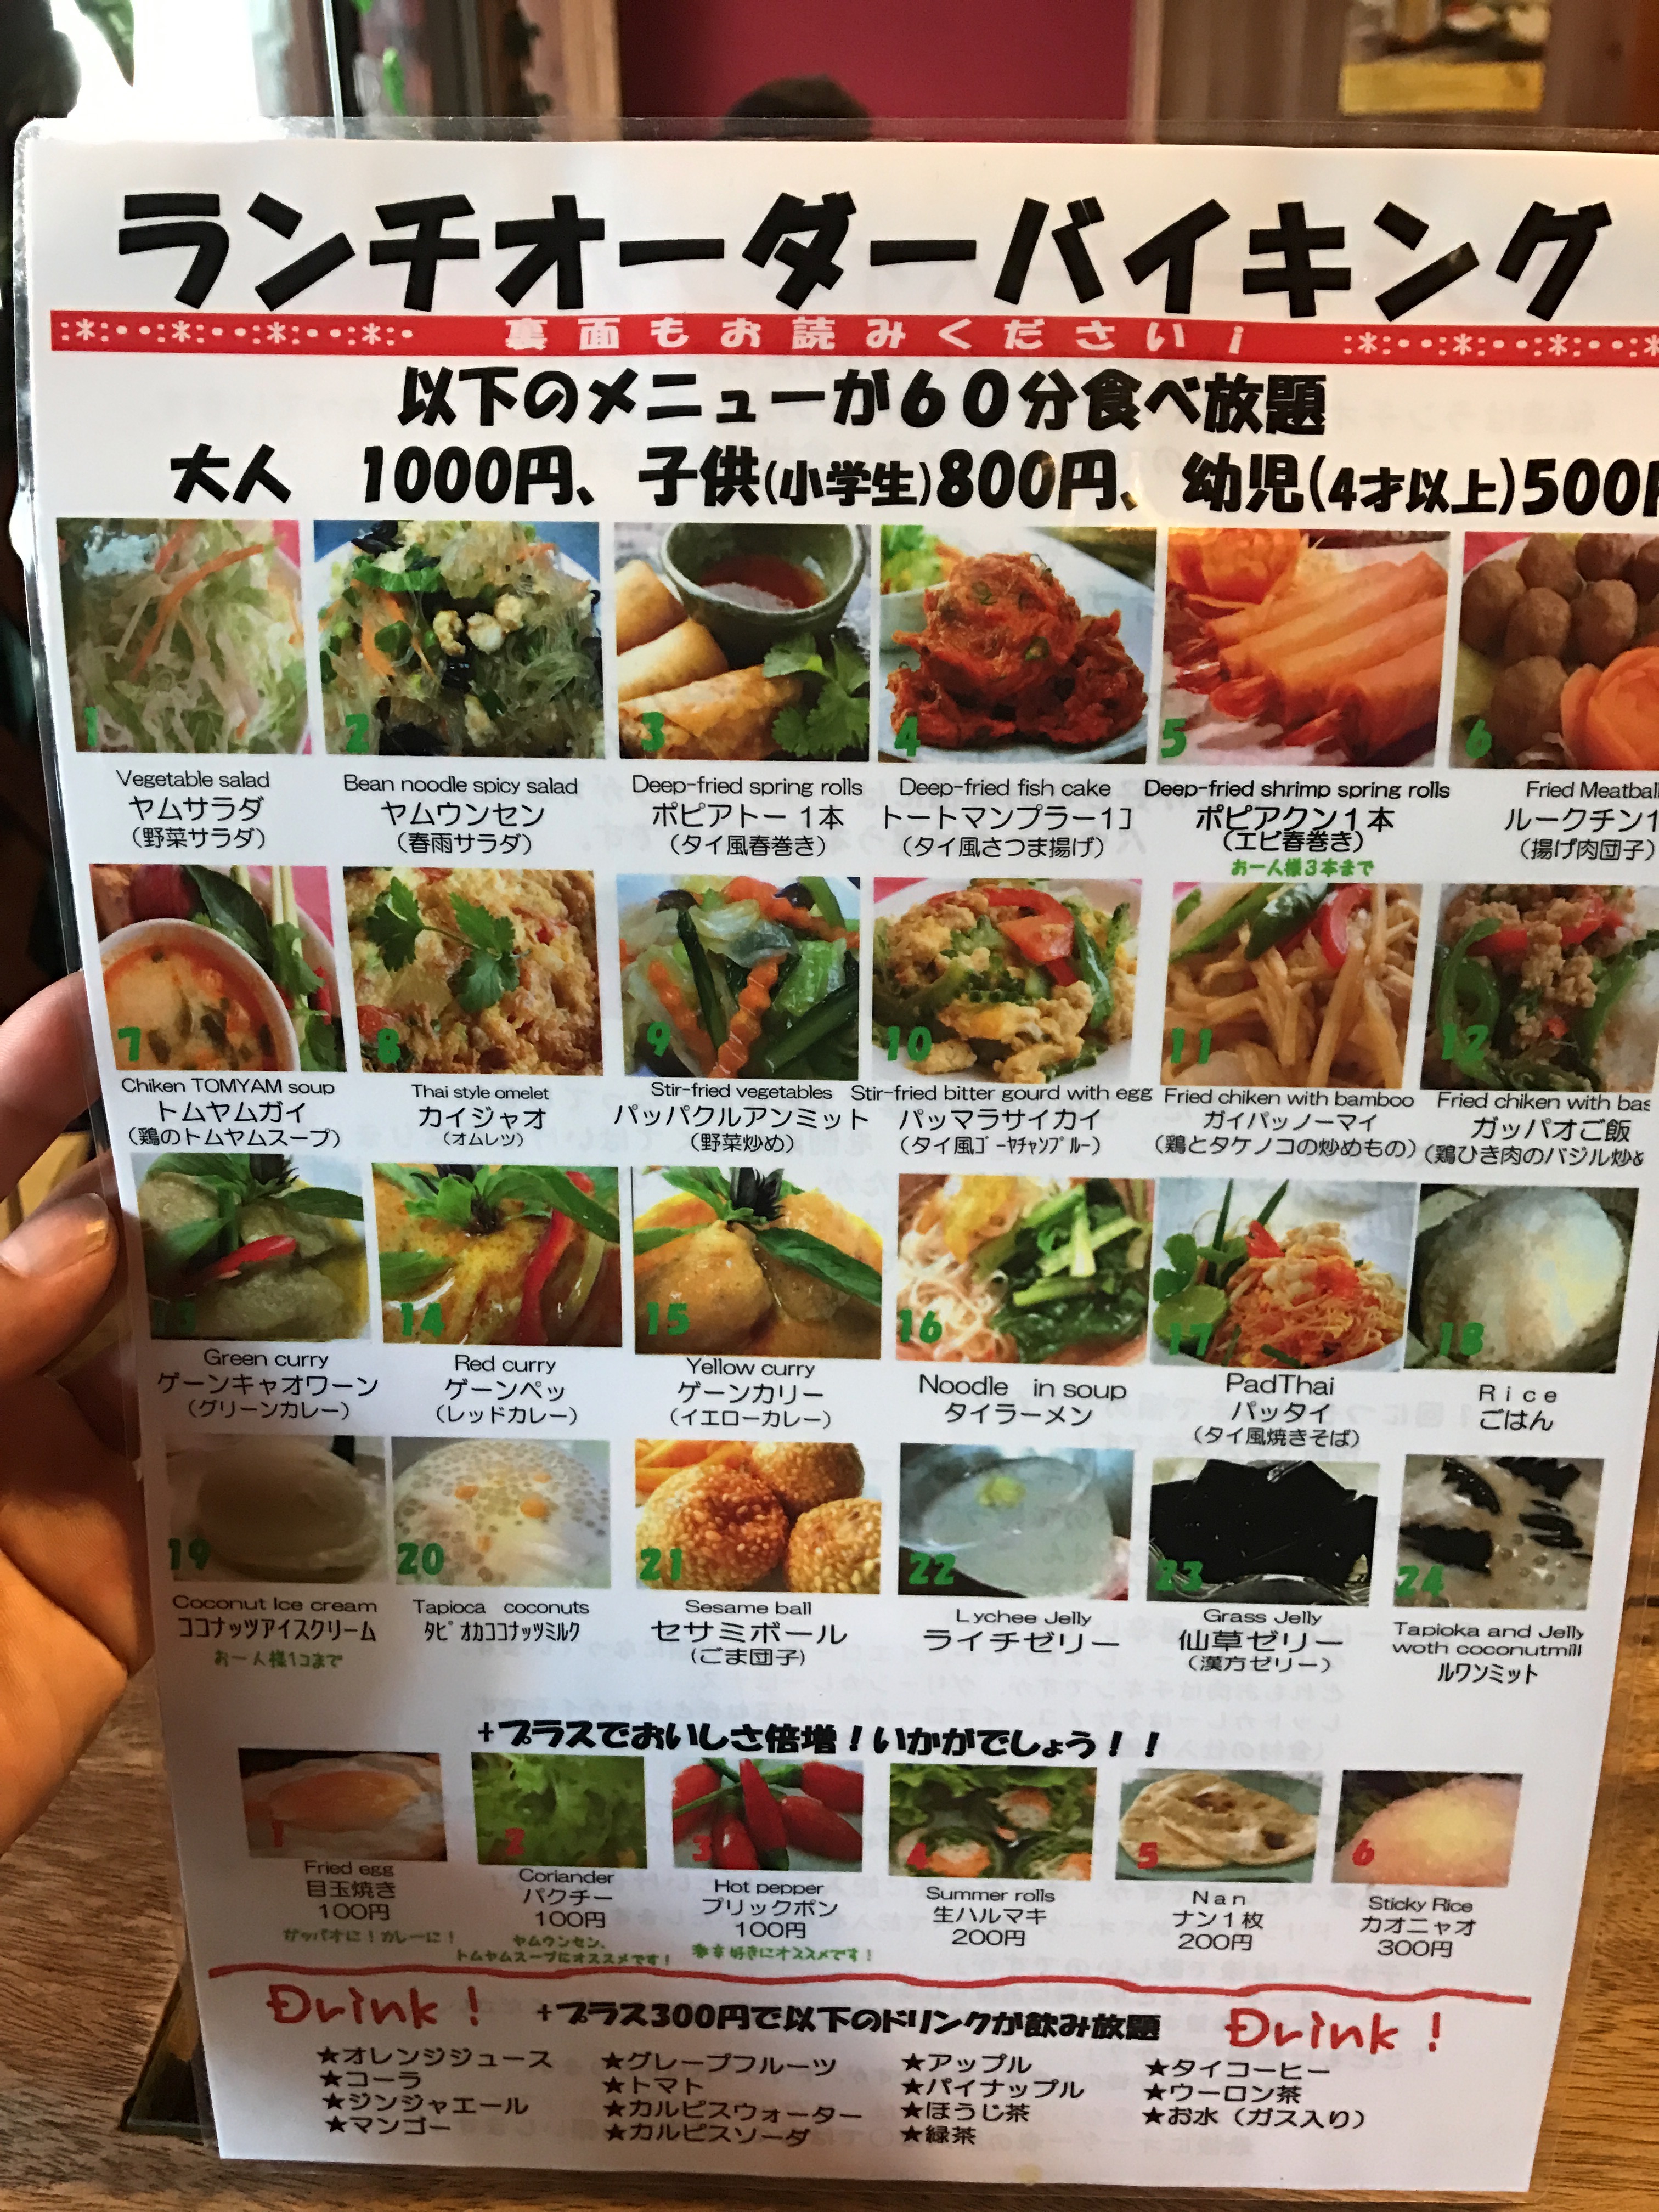 綾瀬のasian Asianランチはタイ料理食べ放題で1 000円 Life Designer